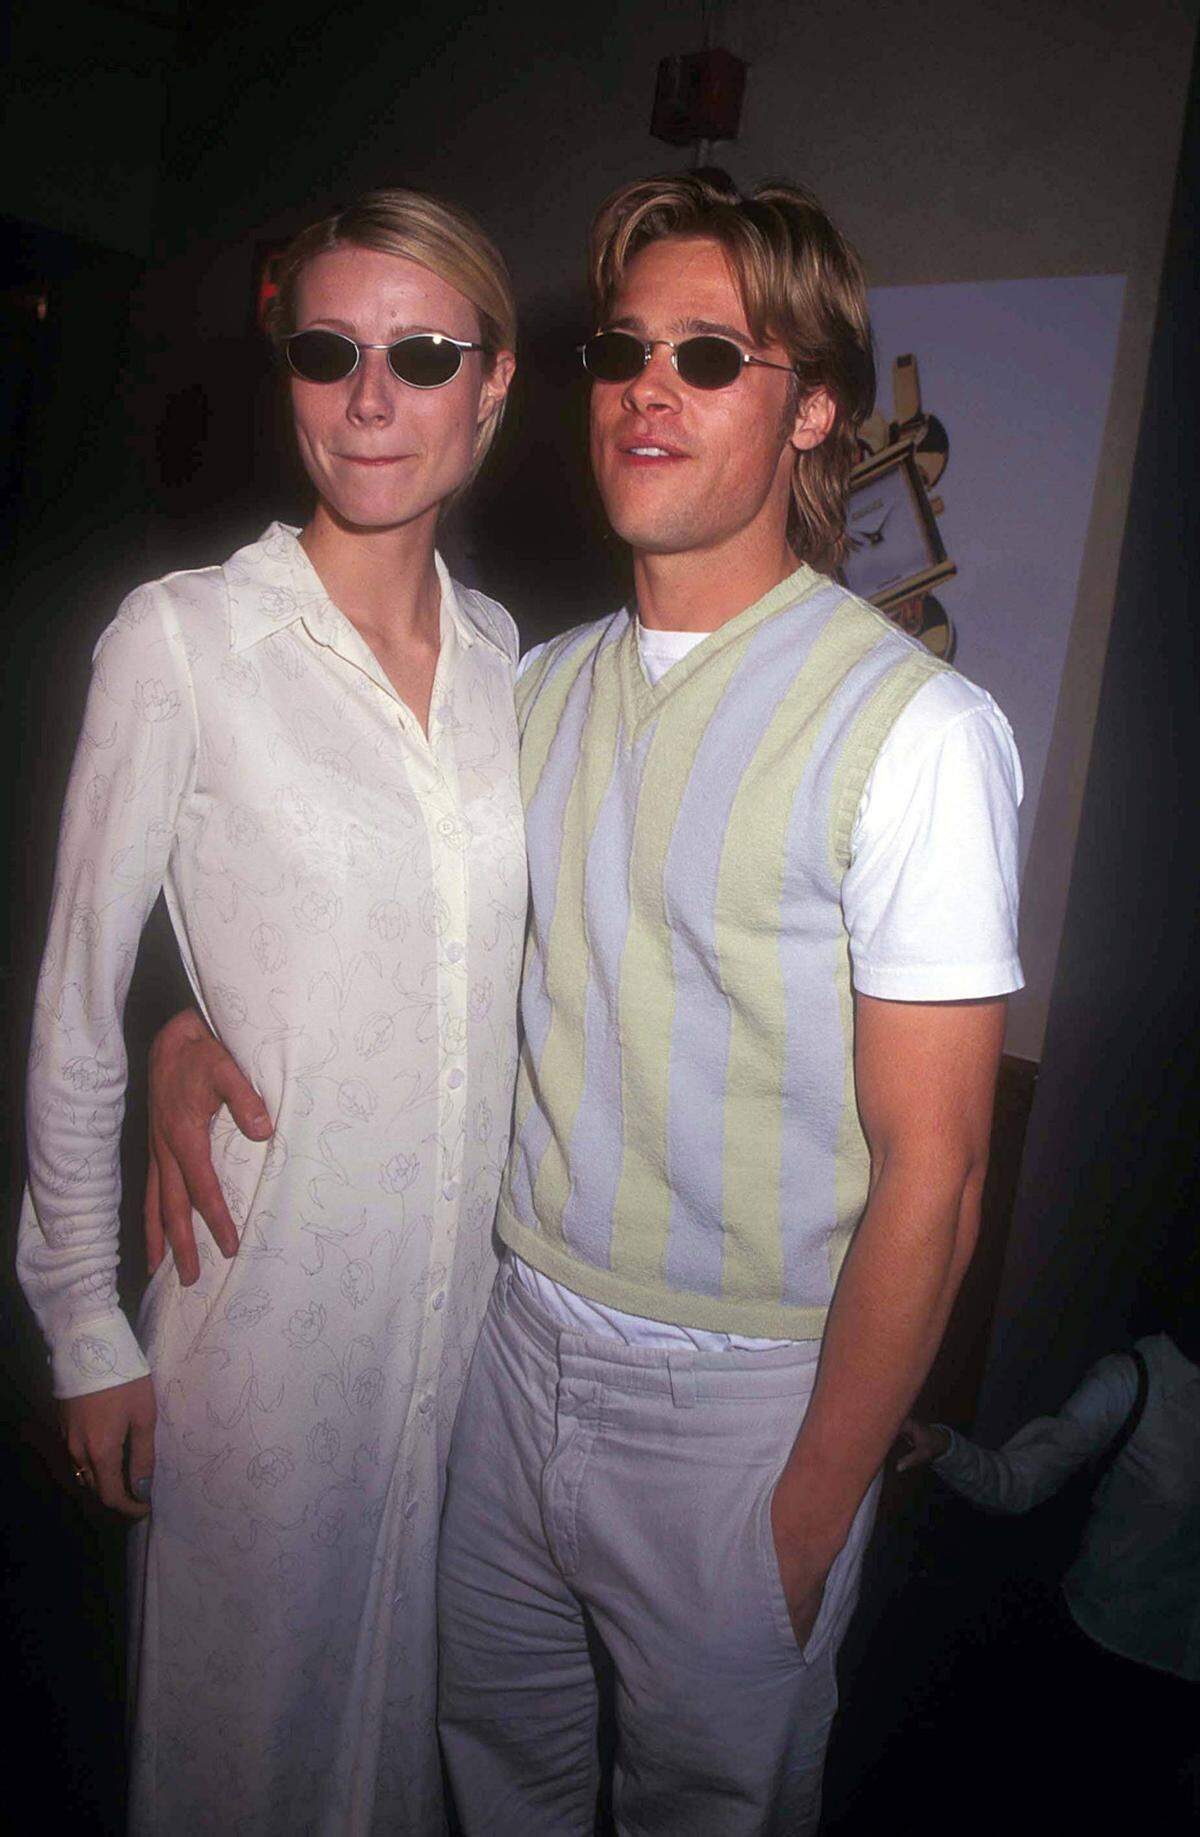 Von 1994 bis 1997 waren die beiden Hollywood-Schauspieler liiert. Und sie teilten offensichtlich den gleichen Sonnenbrillen-Geschmack ...